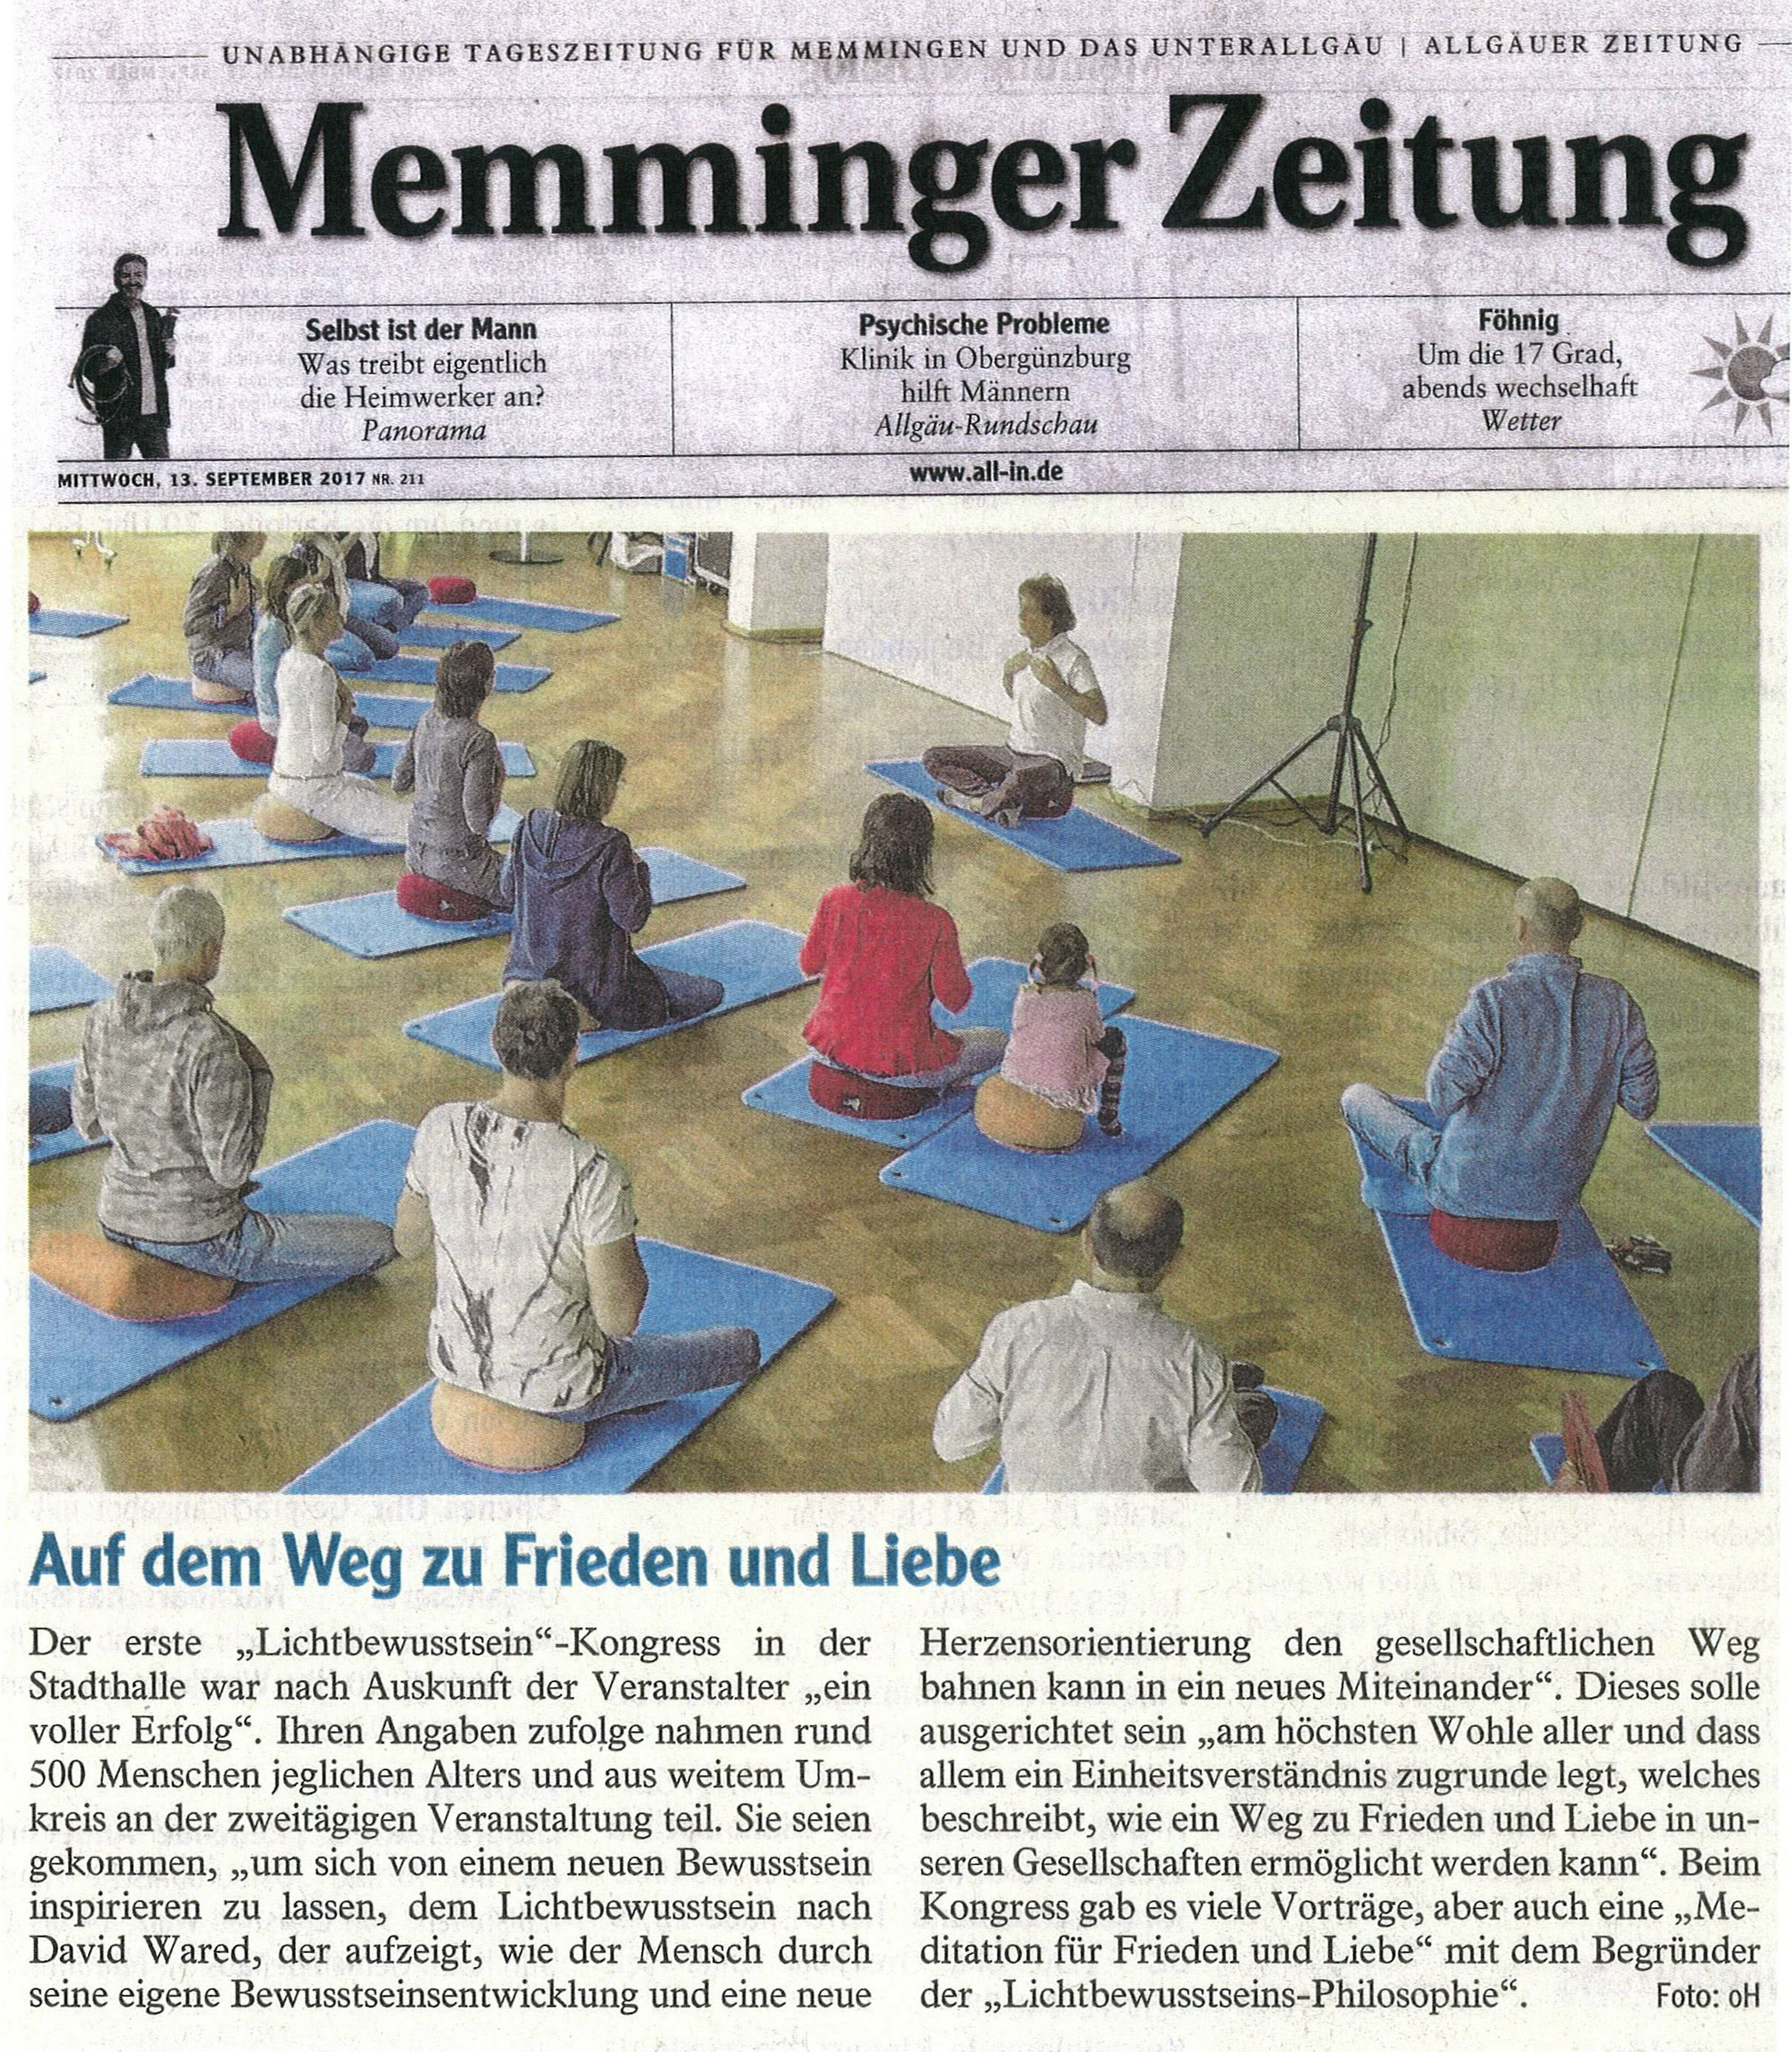 Memminger Zeitung Artikel über den 1. Lichtbewusstseinkongress der Lichtbewusstseinsphilosophie nach David Wared in Memmingen in der Stadthalle mit Veranstalterin Gaby Bachmann.